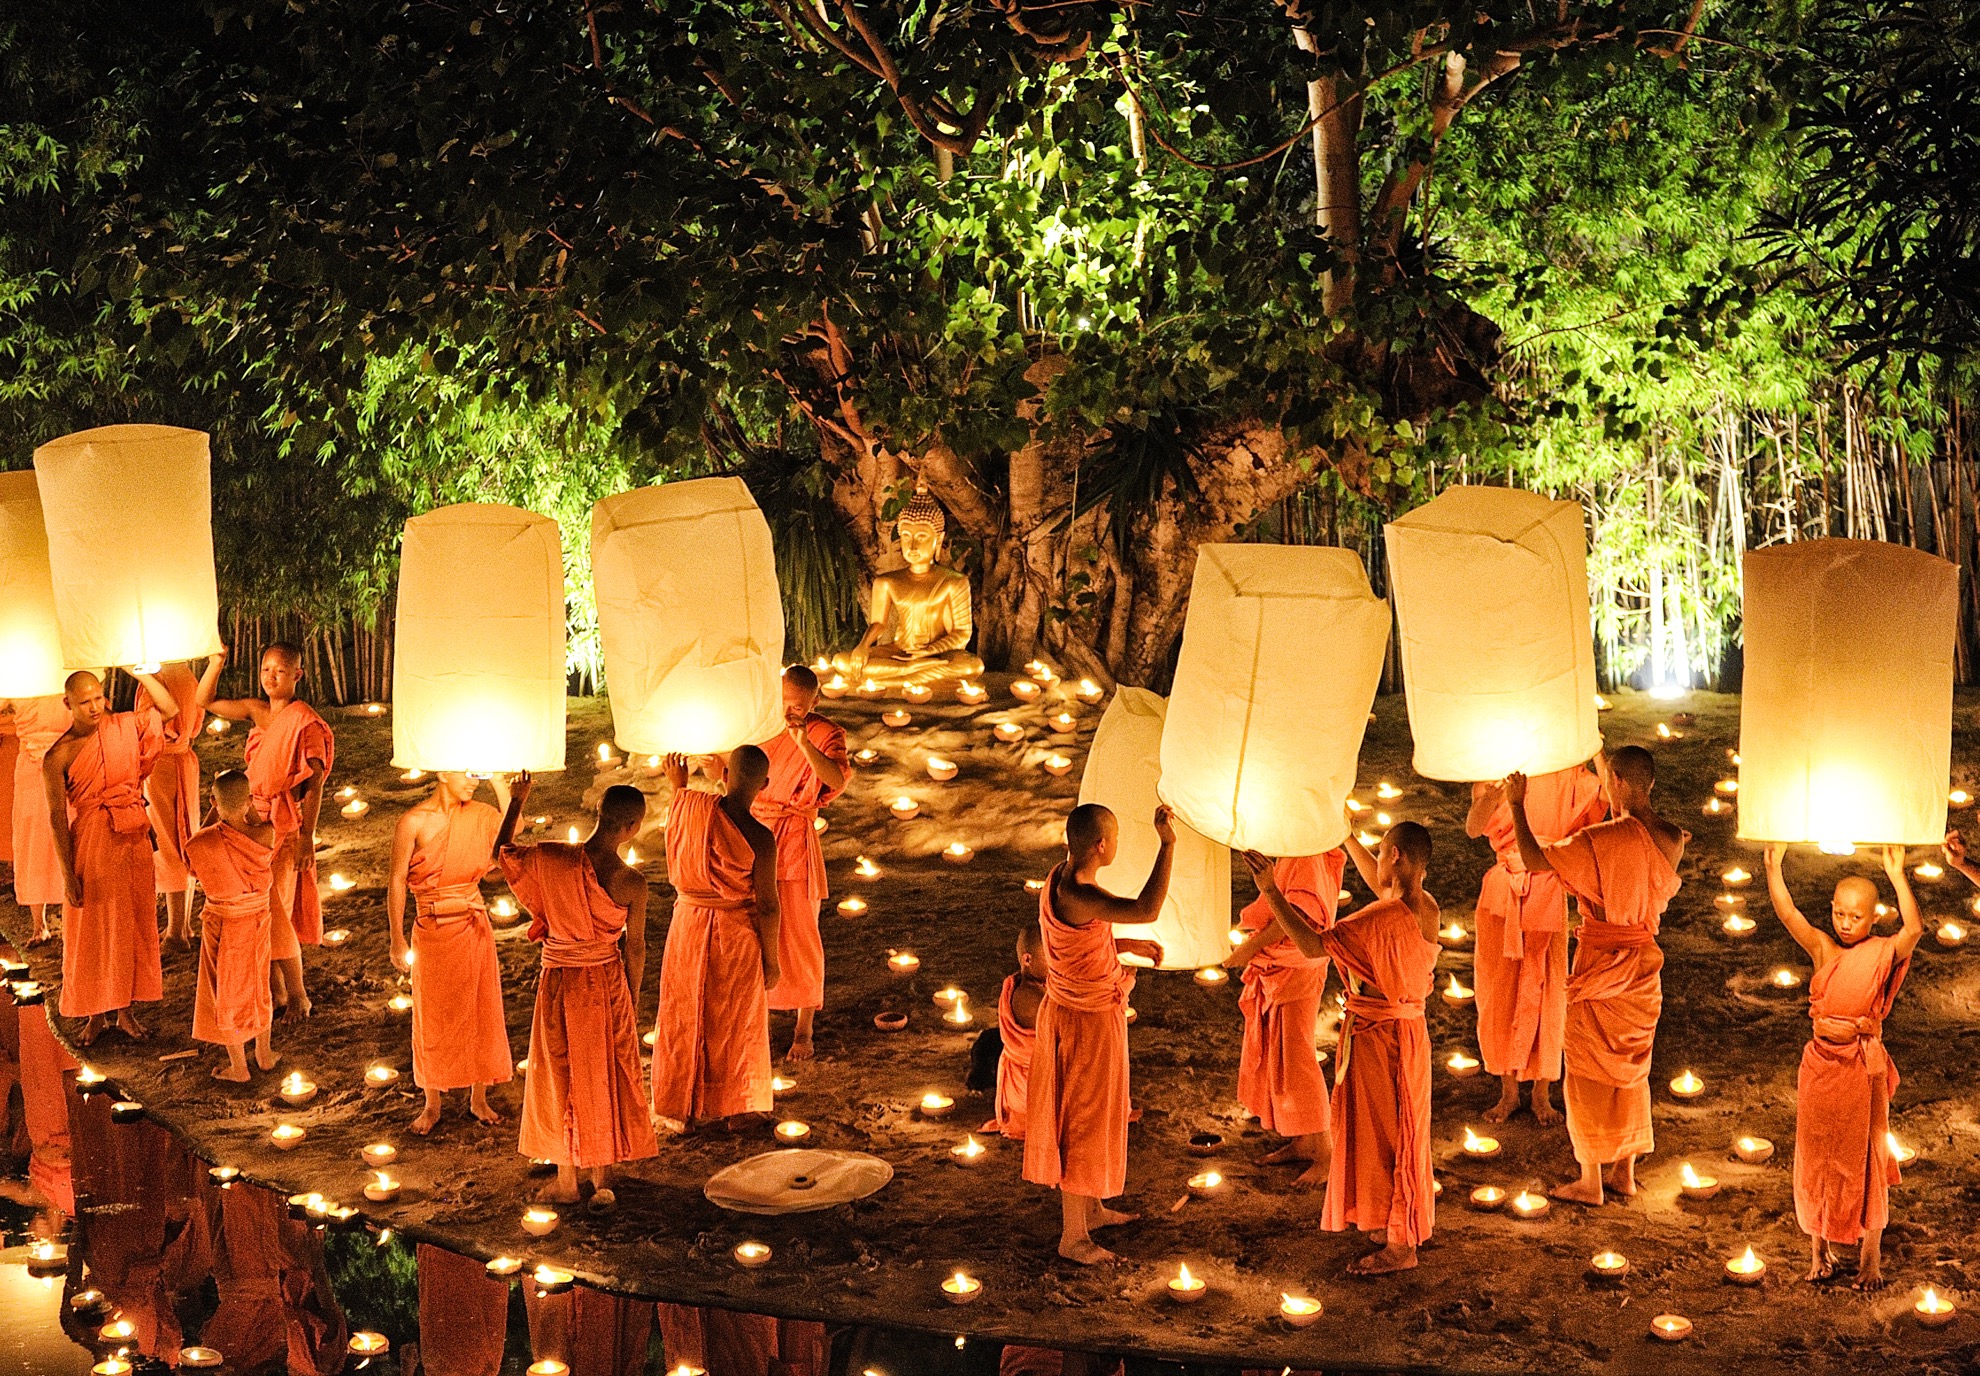 7 Datos rápidos sobre el festival Yi Peng Lantern de Tailandia - 7